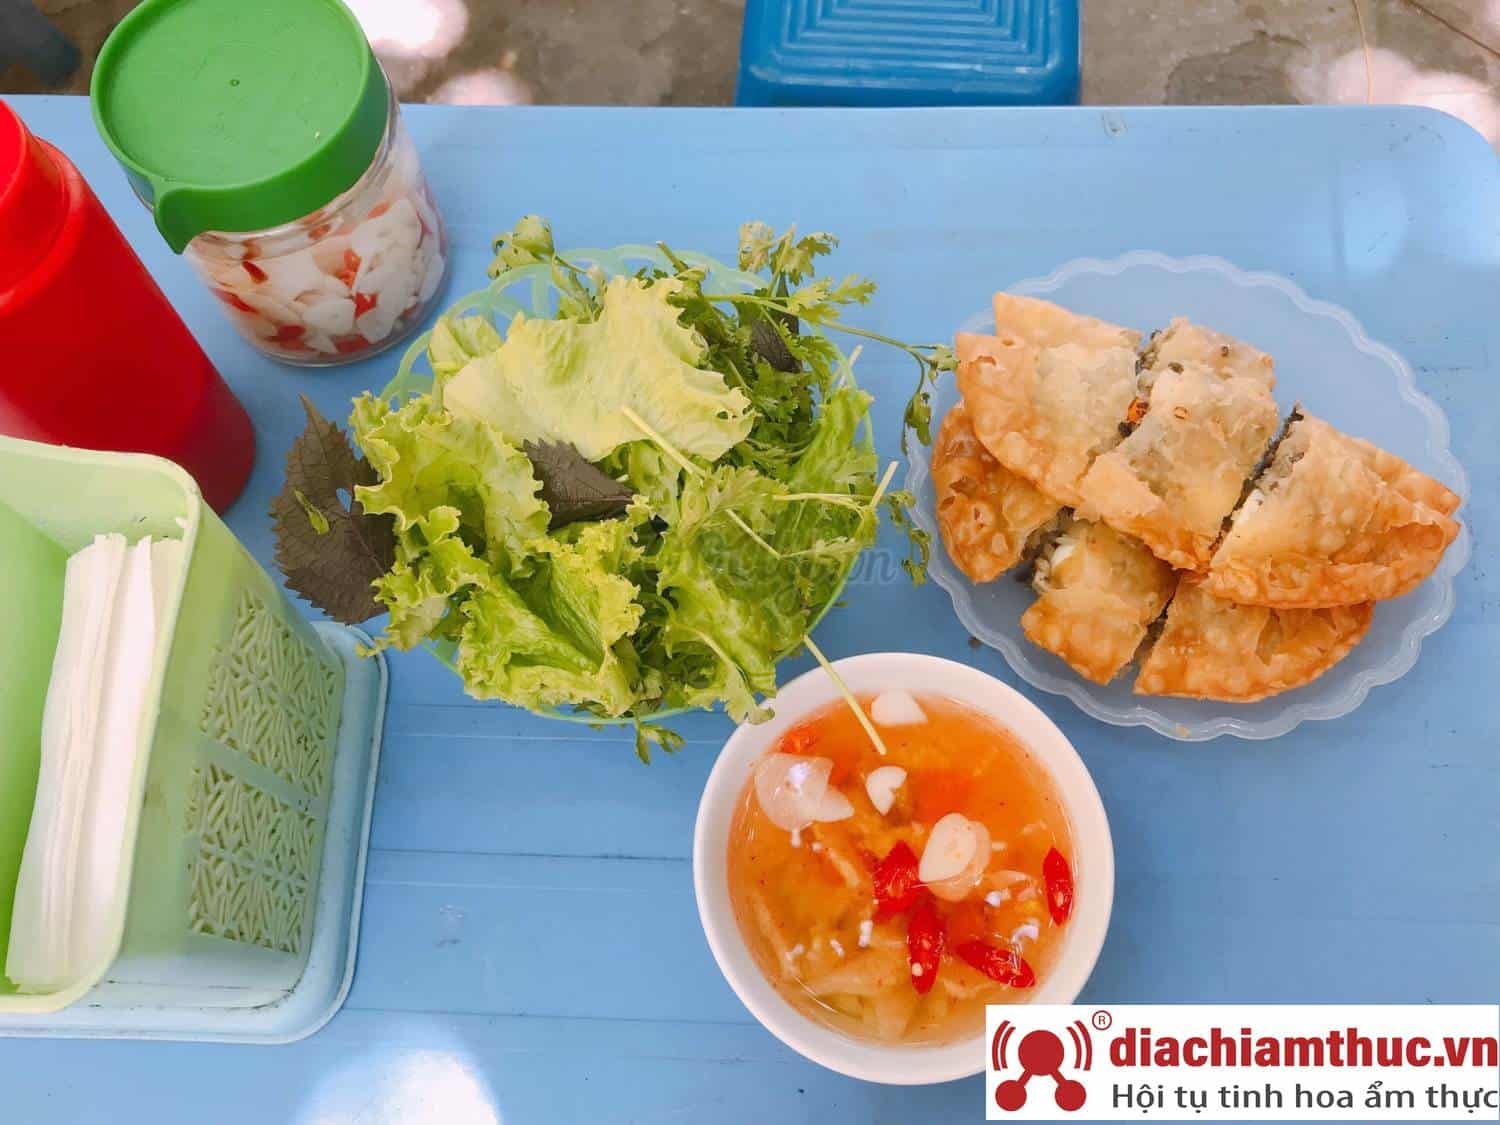 Bánh gối Hoàng Tích Trí – Cửa hàng bánh gối nổi tiếng tại Hà Nội